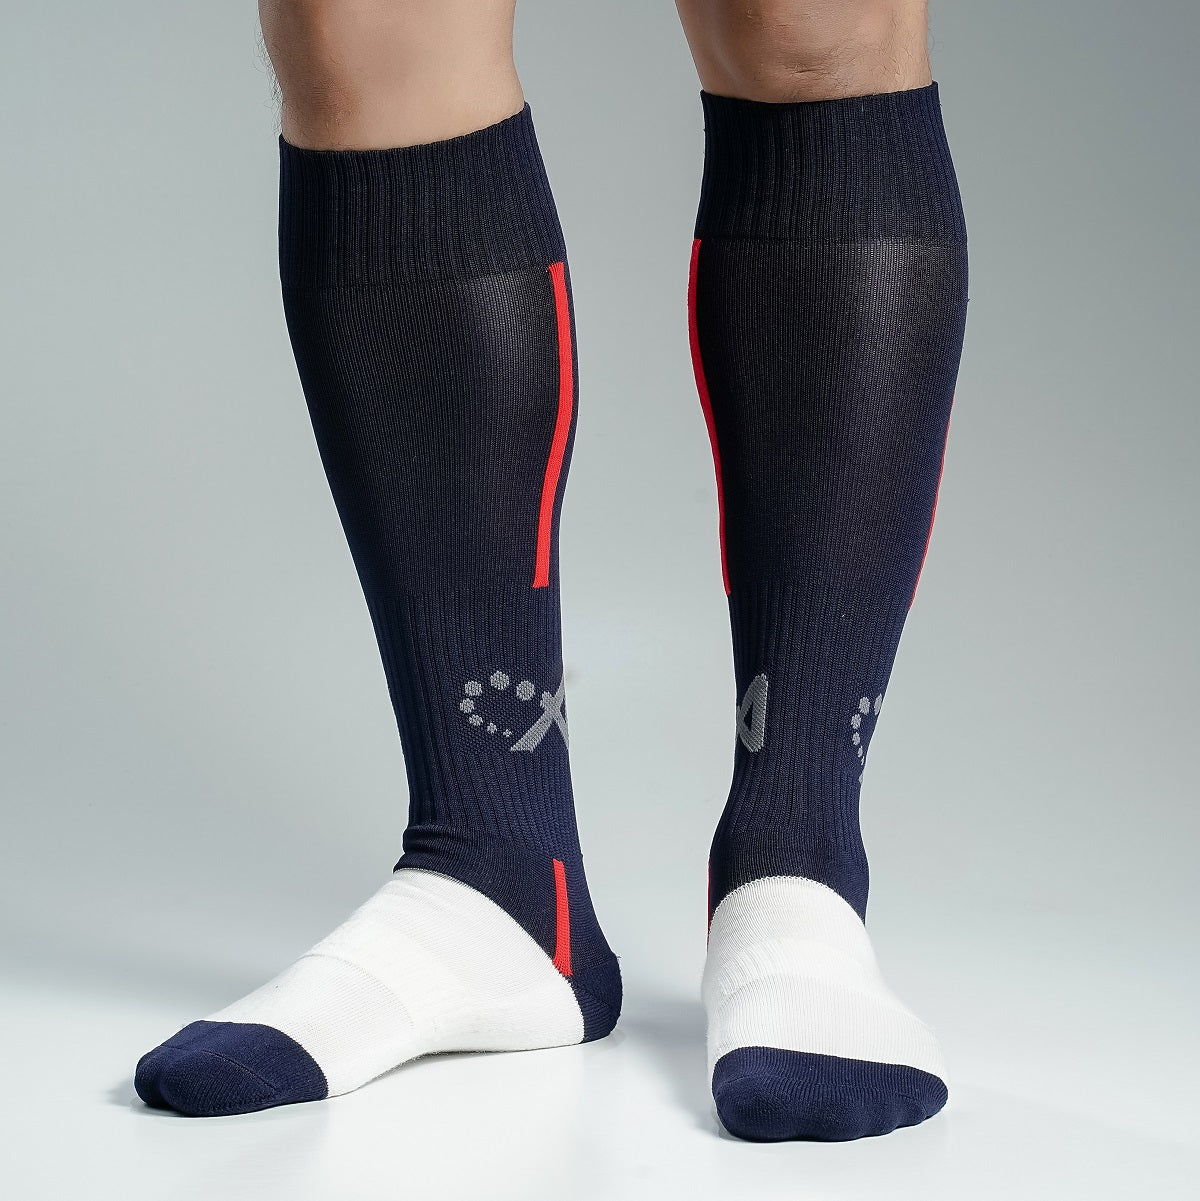 Premium Football Socks For Men